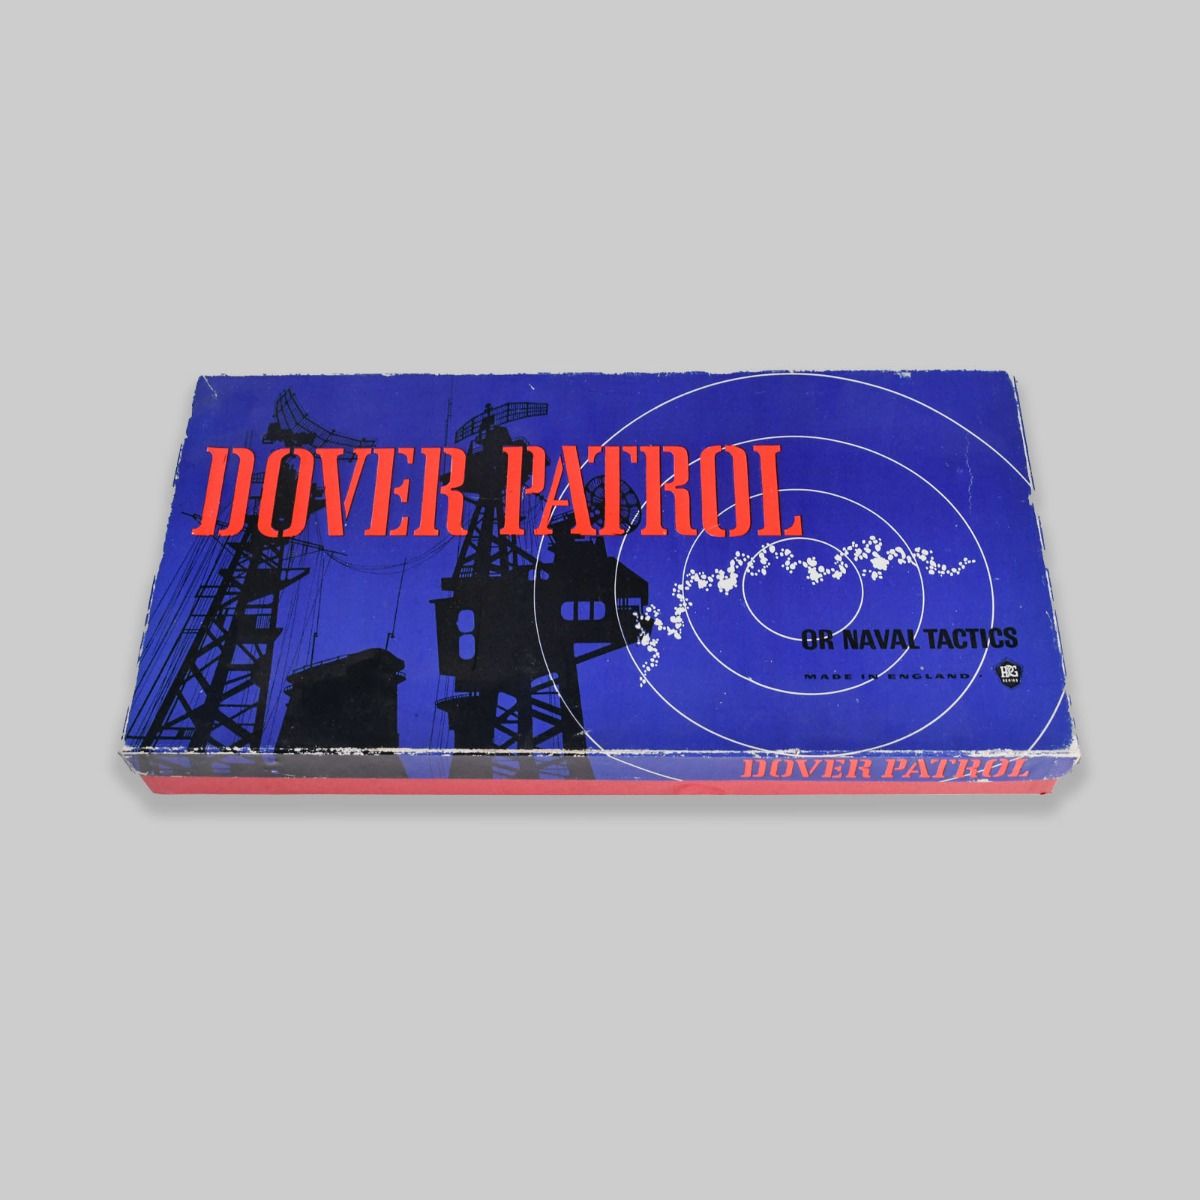 'Dover Patrol' 1955 Board Game